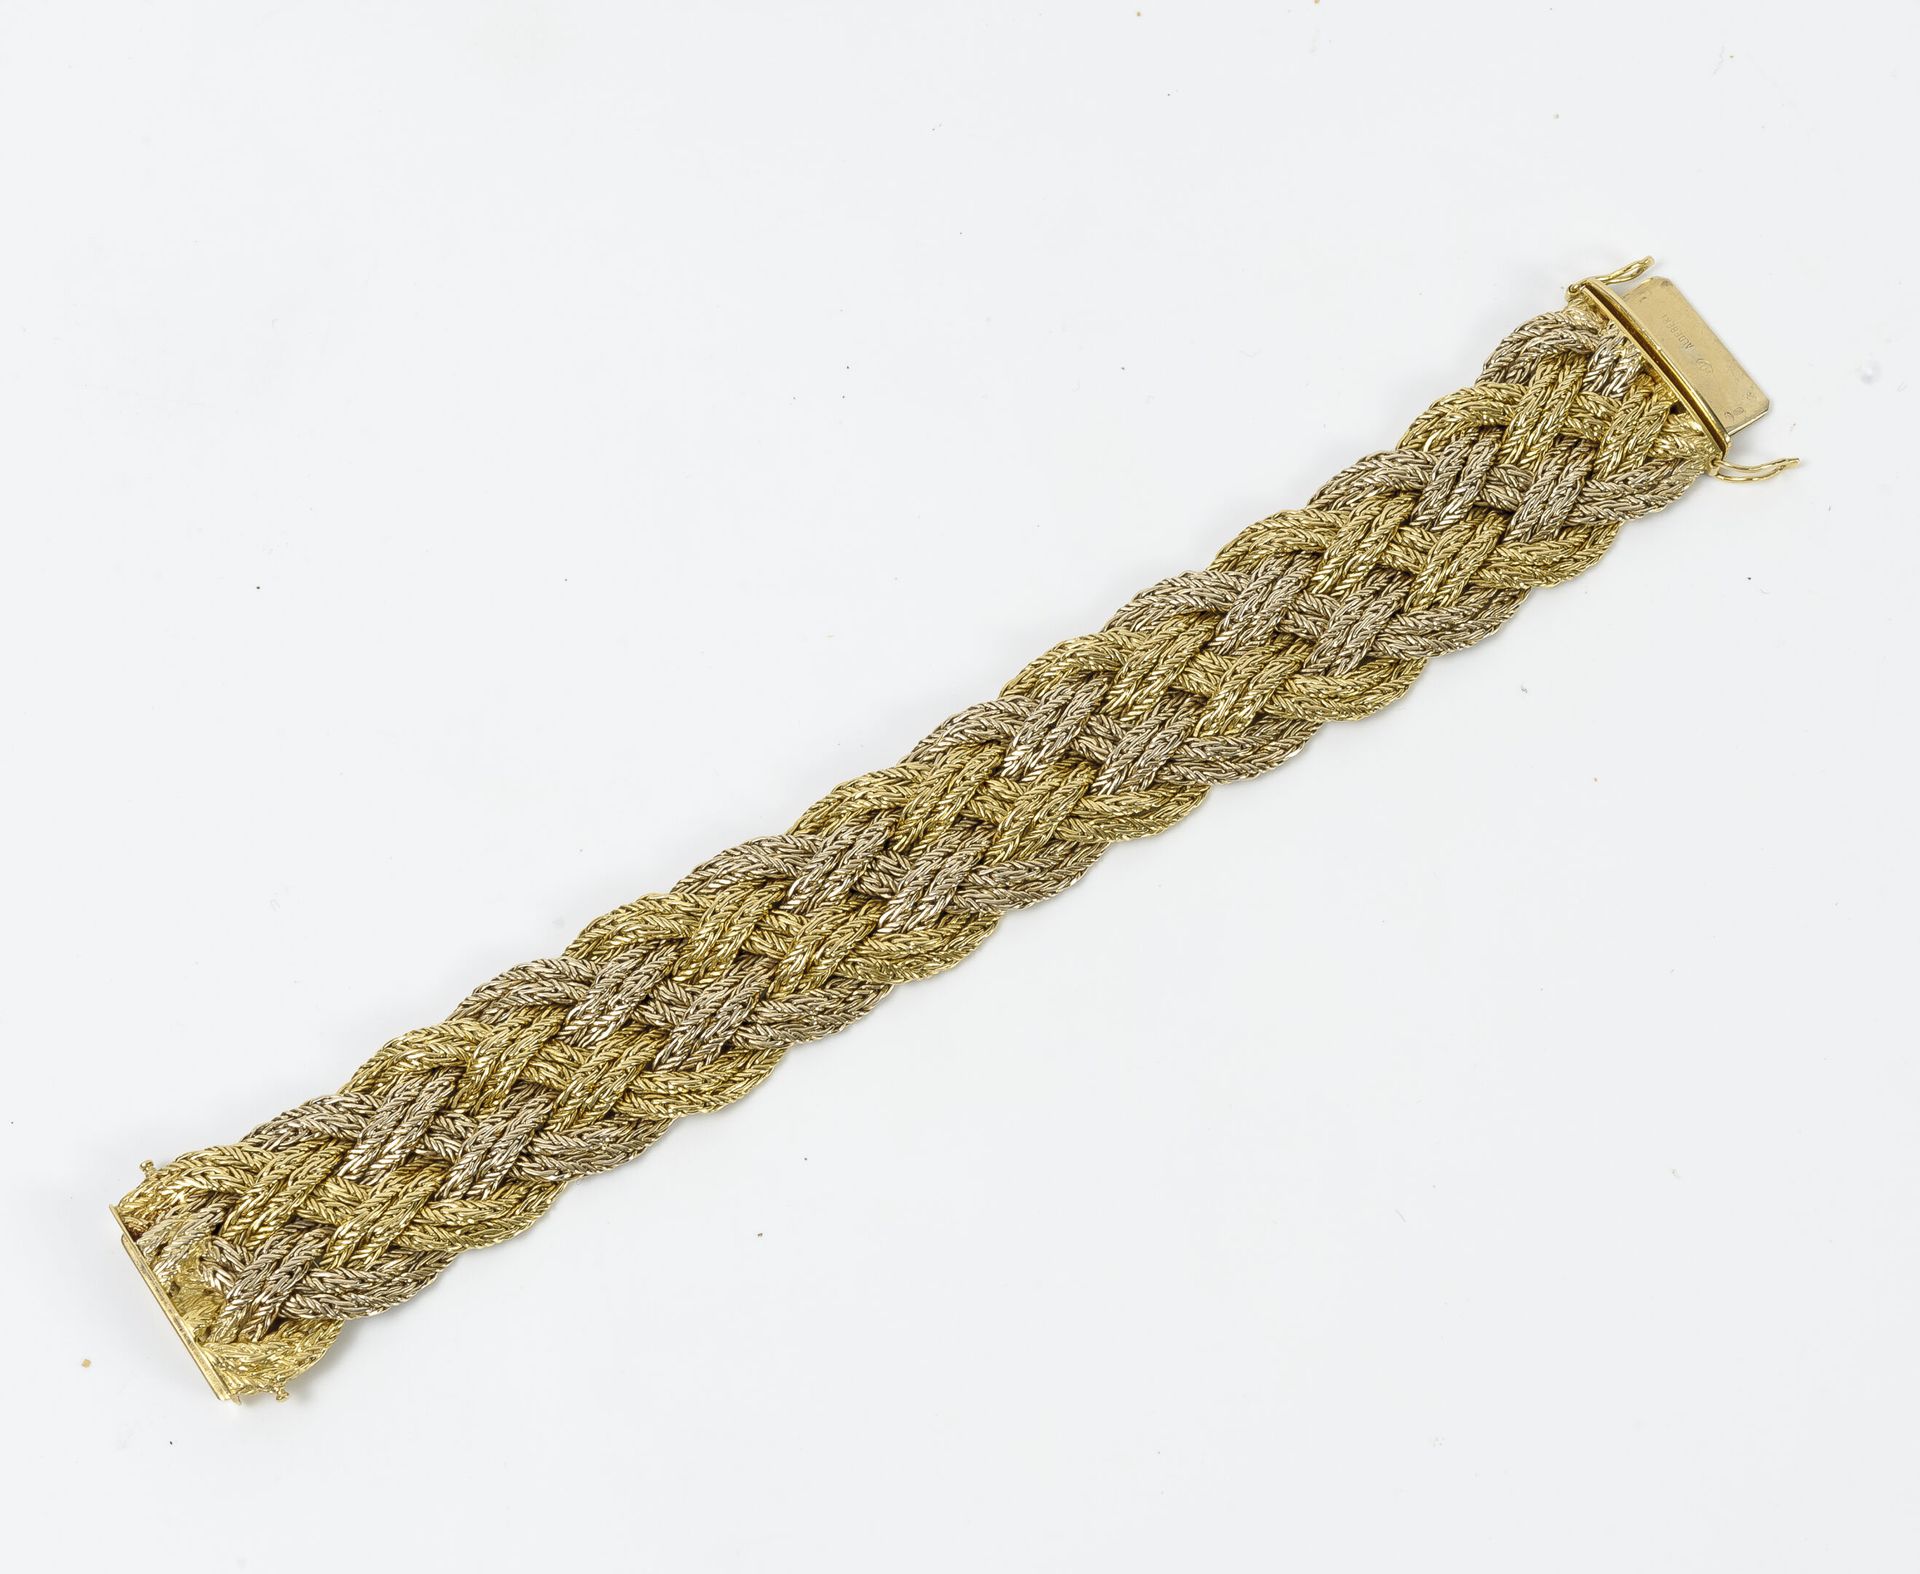 ALDEBERT Zweifarbiges Gold (750) Bandarmband mit geflochtenem Netz.
Ratschenvers&hellip;